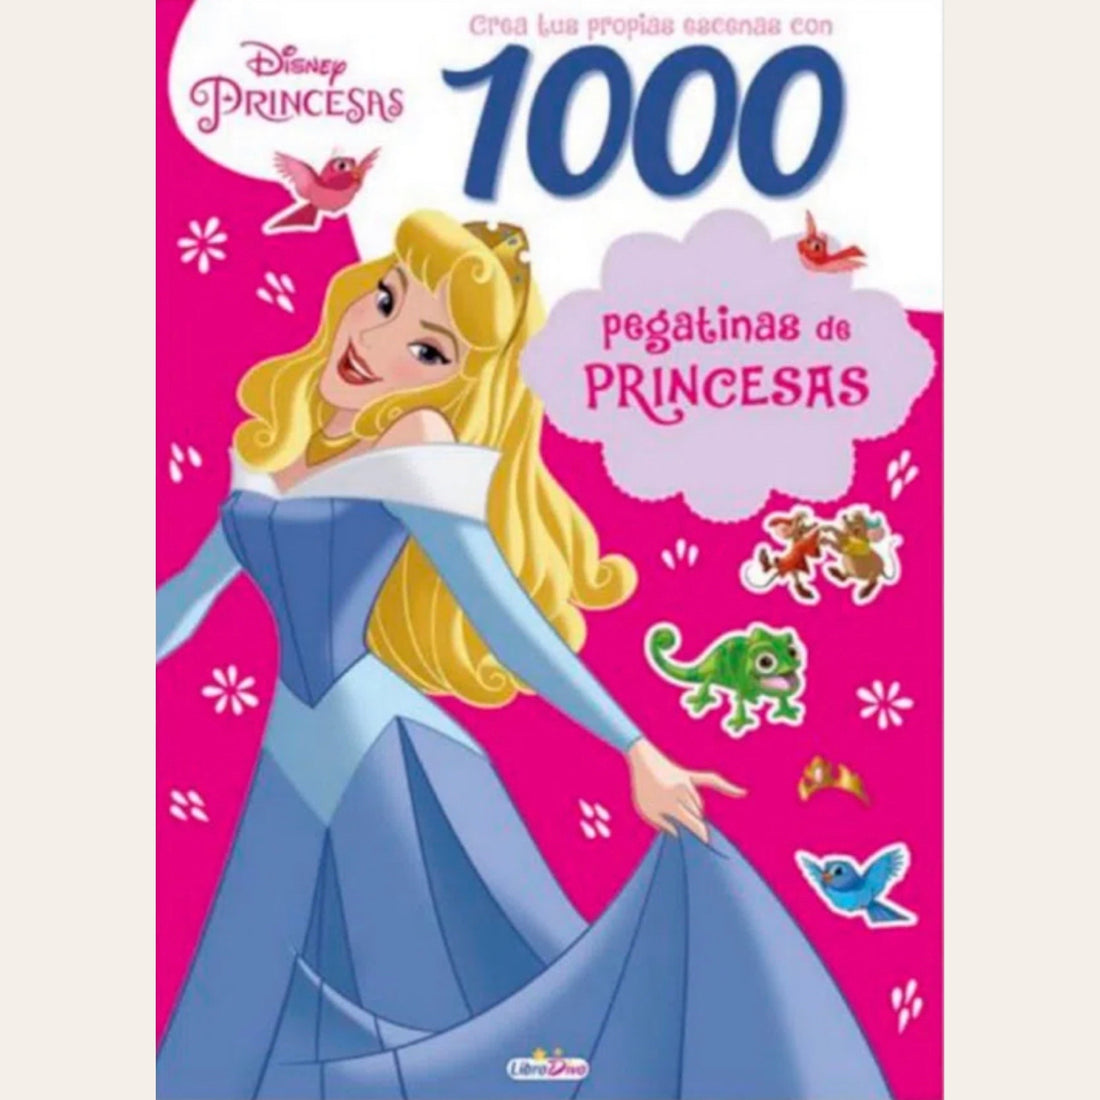 1000 Stickers Princesas Disney – Barquito de Papel